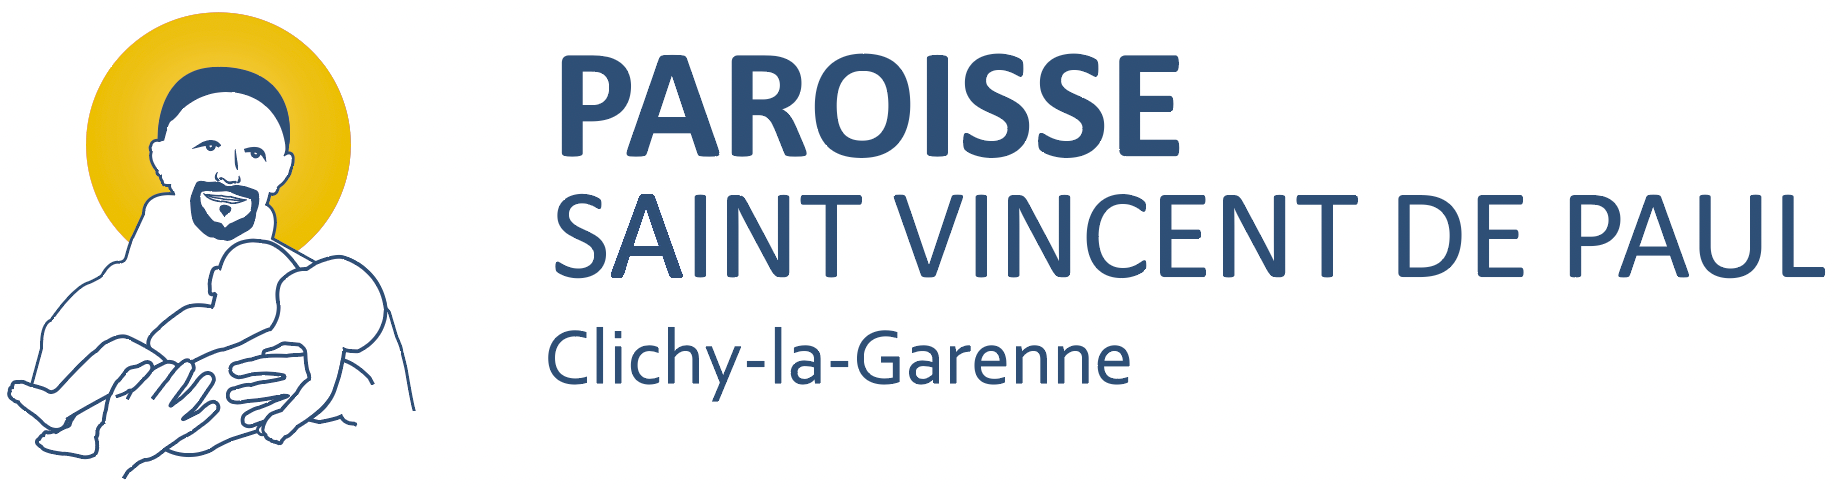 Paroisse Saint Vincent de Paul de Clichy